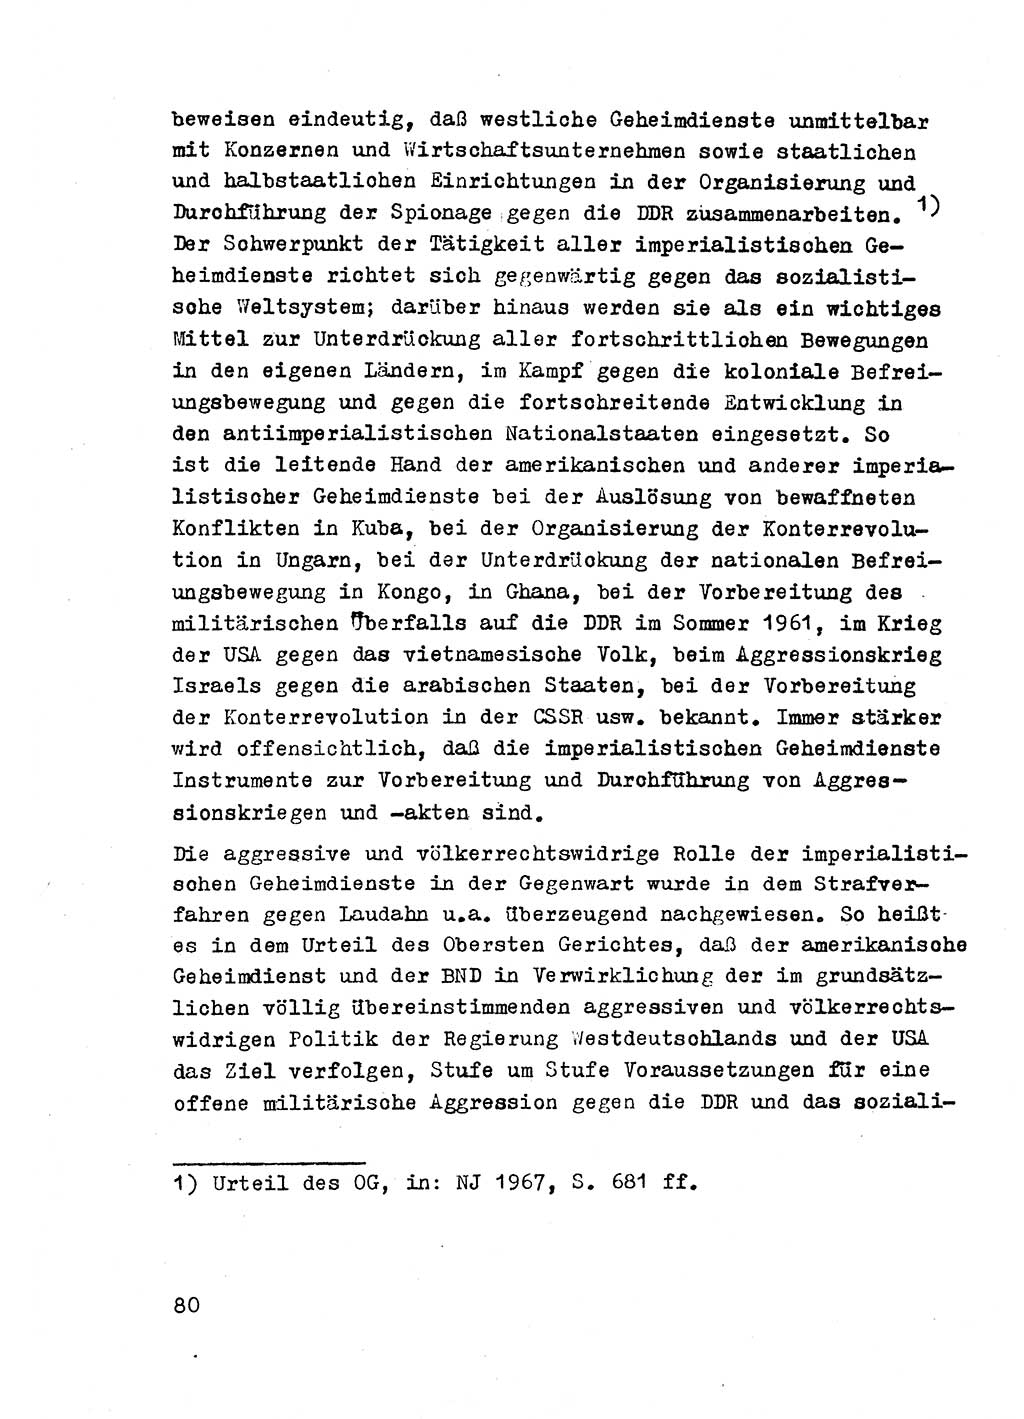 Strafrecht der DDR (Deutsche Demokratische Republik), Besonderer Teil, Lehrmaterial, Heft 2 1969, Seite 80 (Strafr. DDR BT Lehrmat. H. 2 1969, S. 80)